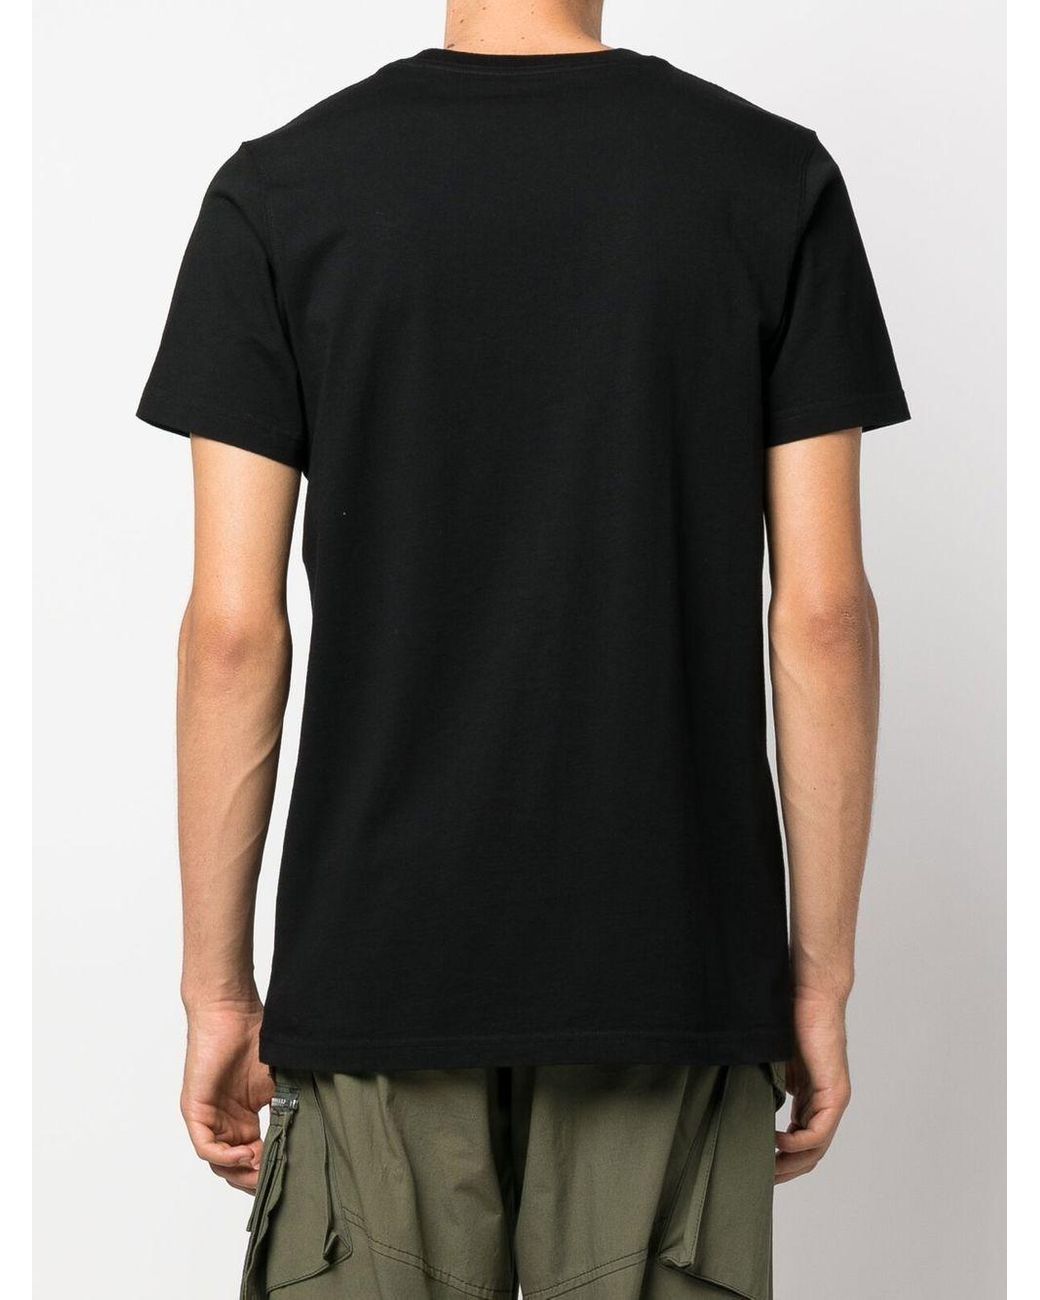 Hombre Ropa de Camisetas y polos de Camisetas de manga larga Camiseta con estampado gráfico Maharishi de Algodón de color Negro para hombre 